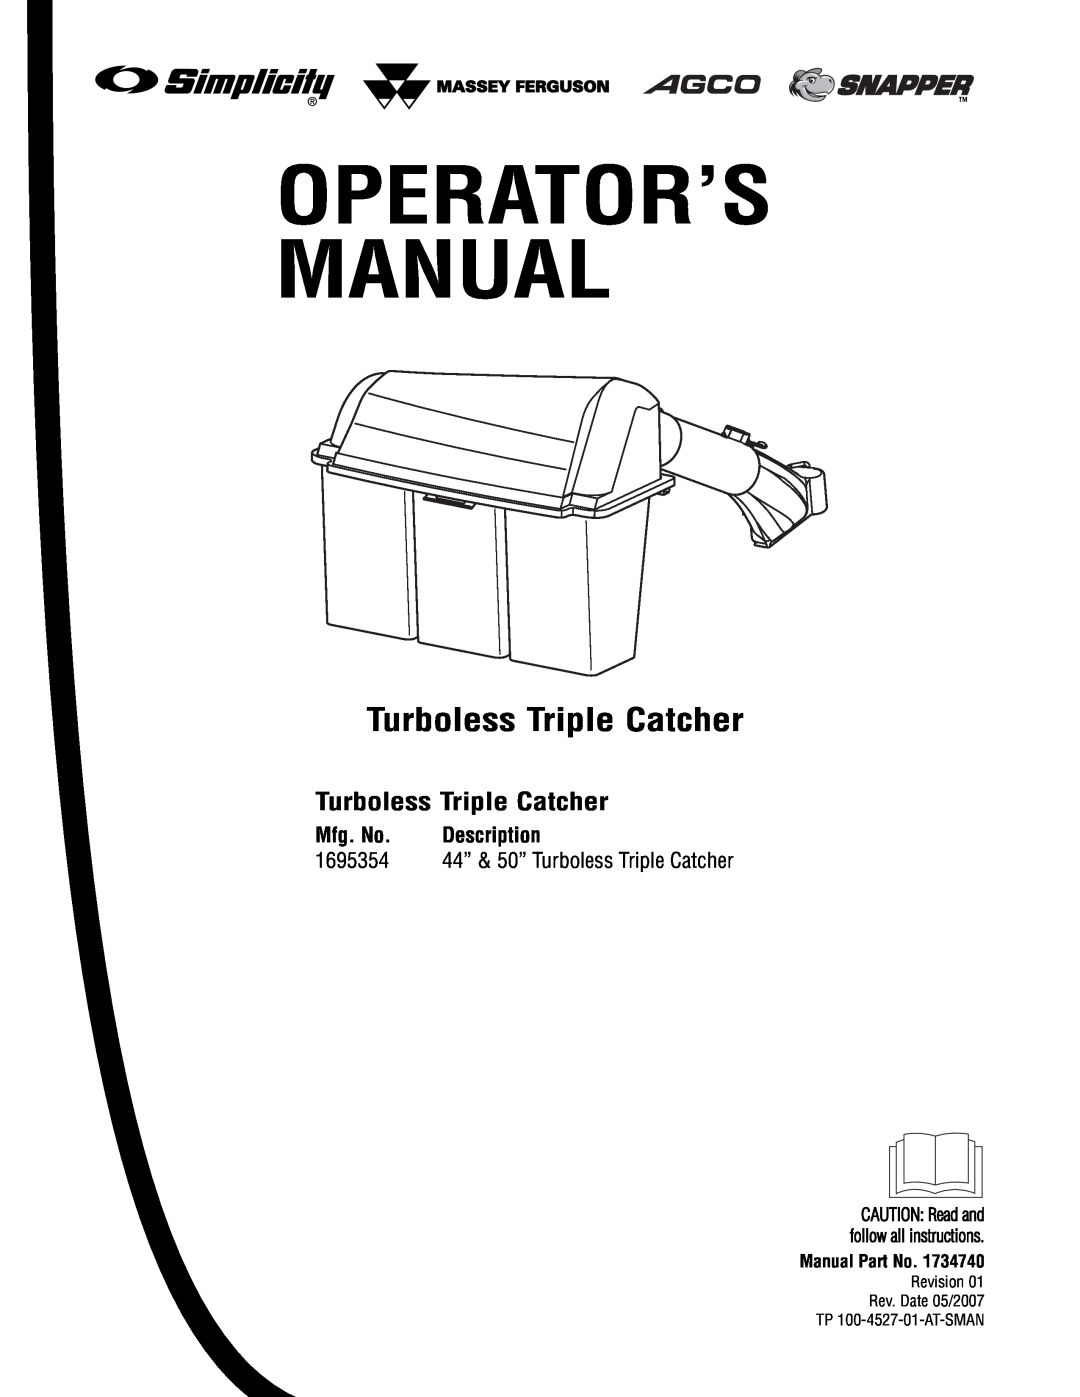 Briggs & Stratton 1695354 manual Turboless Triple Catcher, Mfg. No, Description, Operator’S Manual 